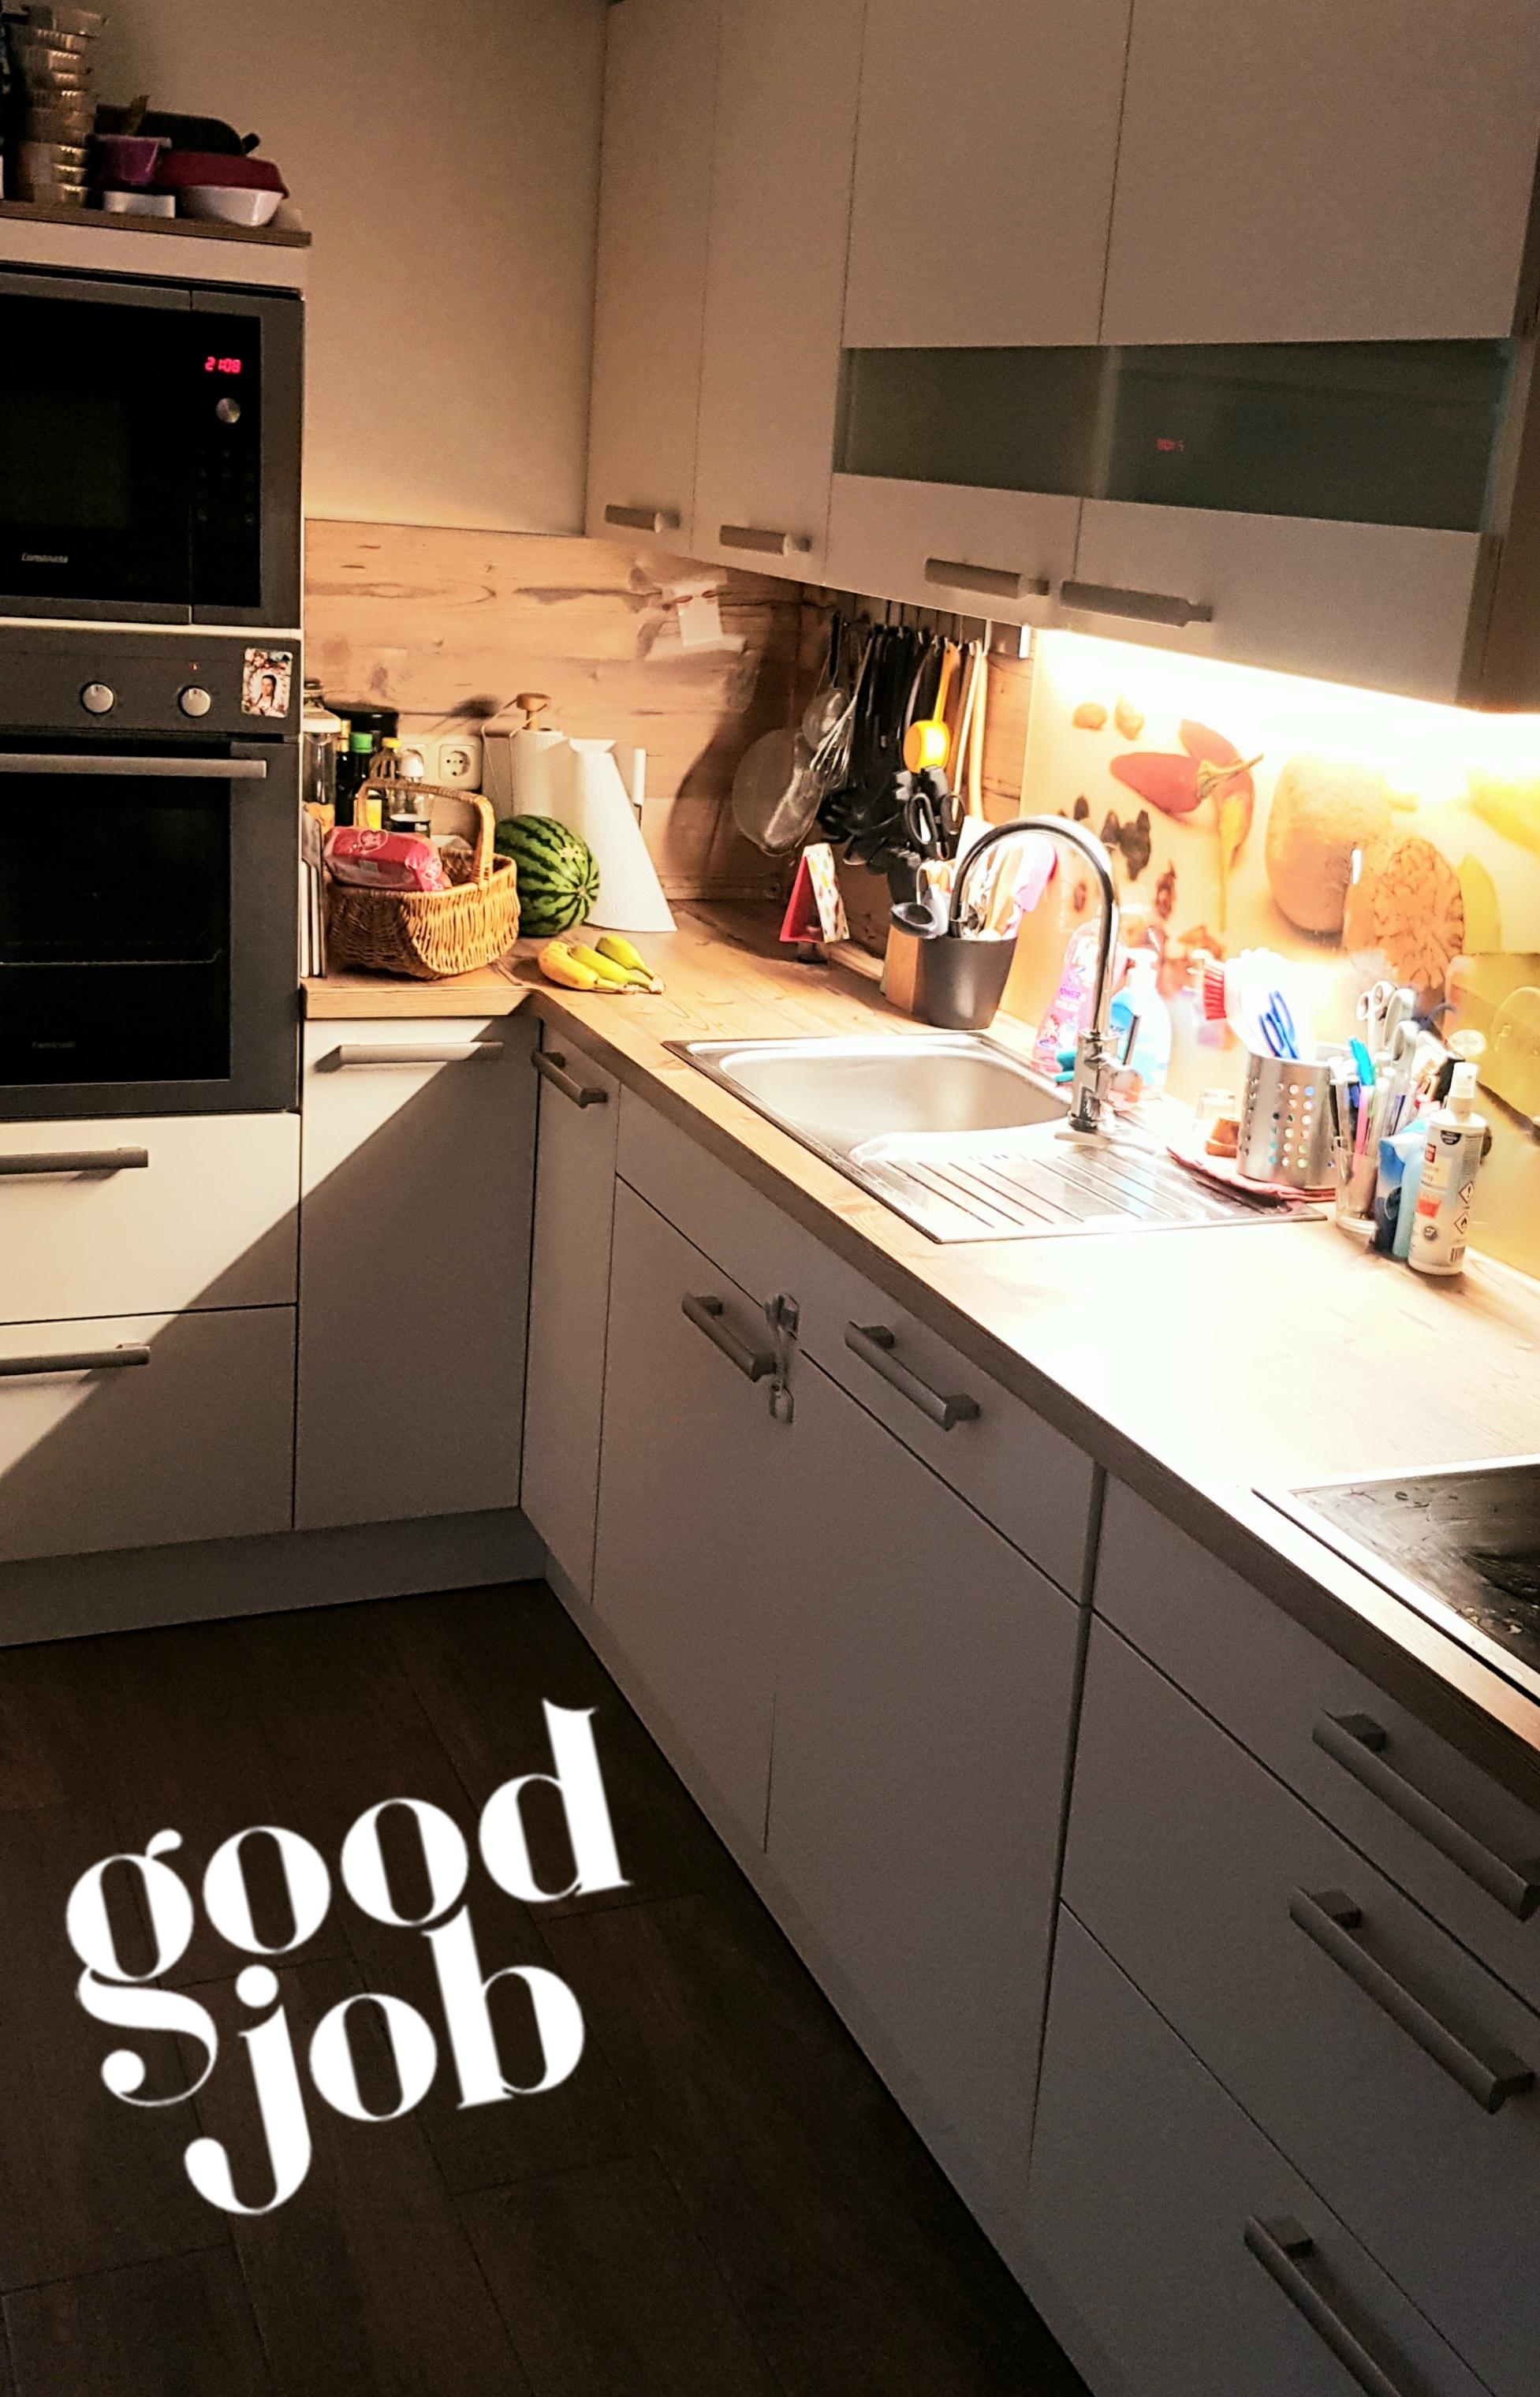 Nach langer Prüfungsphase endlich wieder eine aufgeräumte und sichtbare Küche #kitchen #sauber #zuhause #küche 